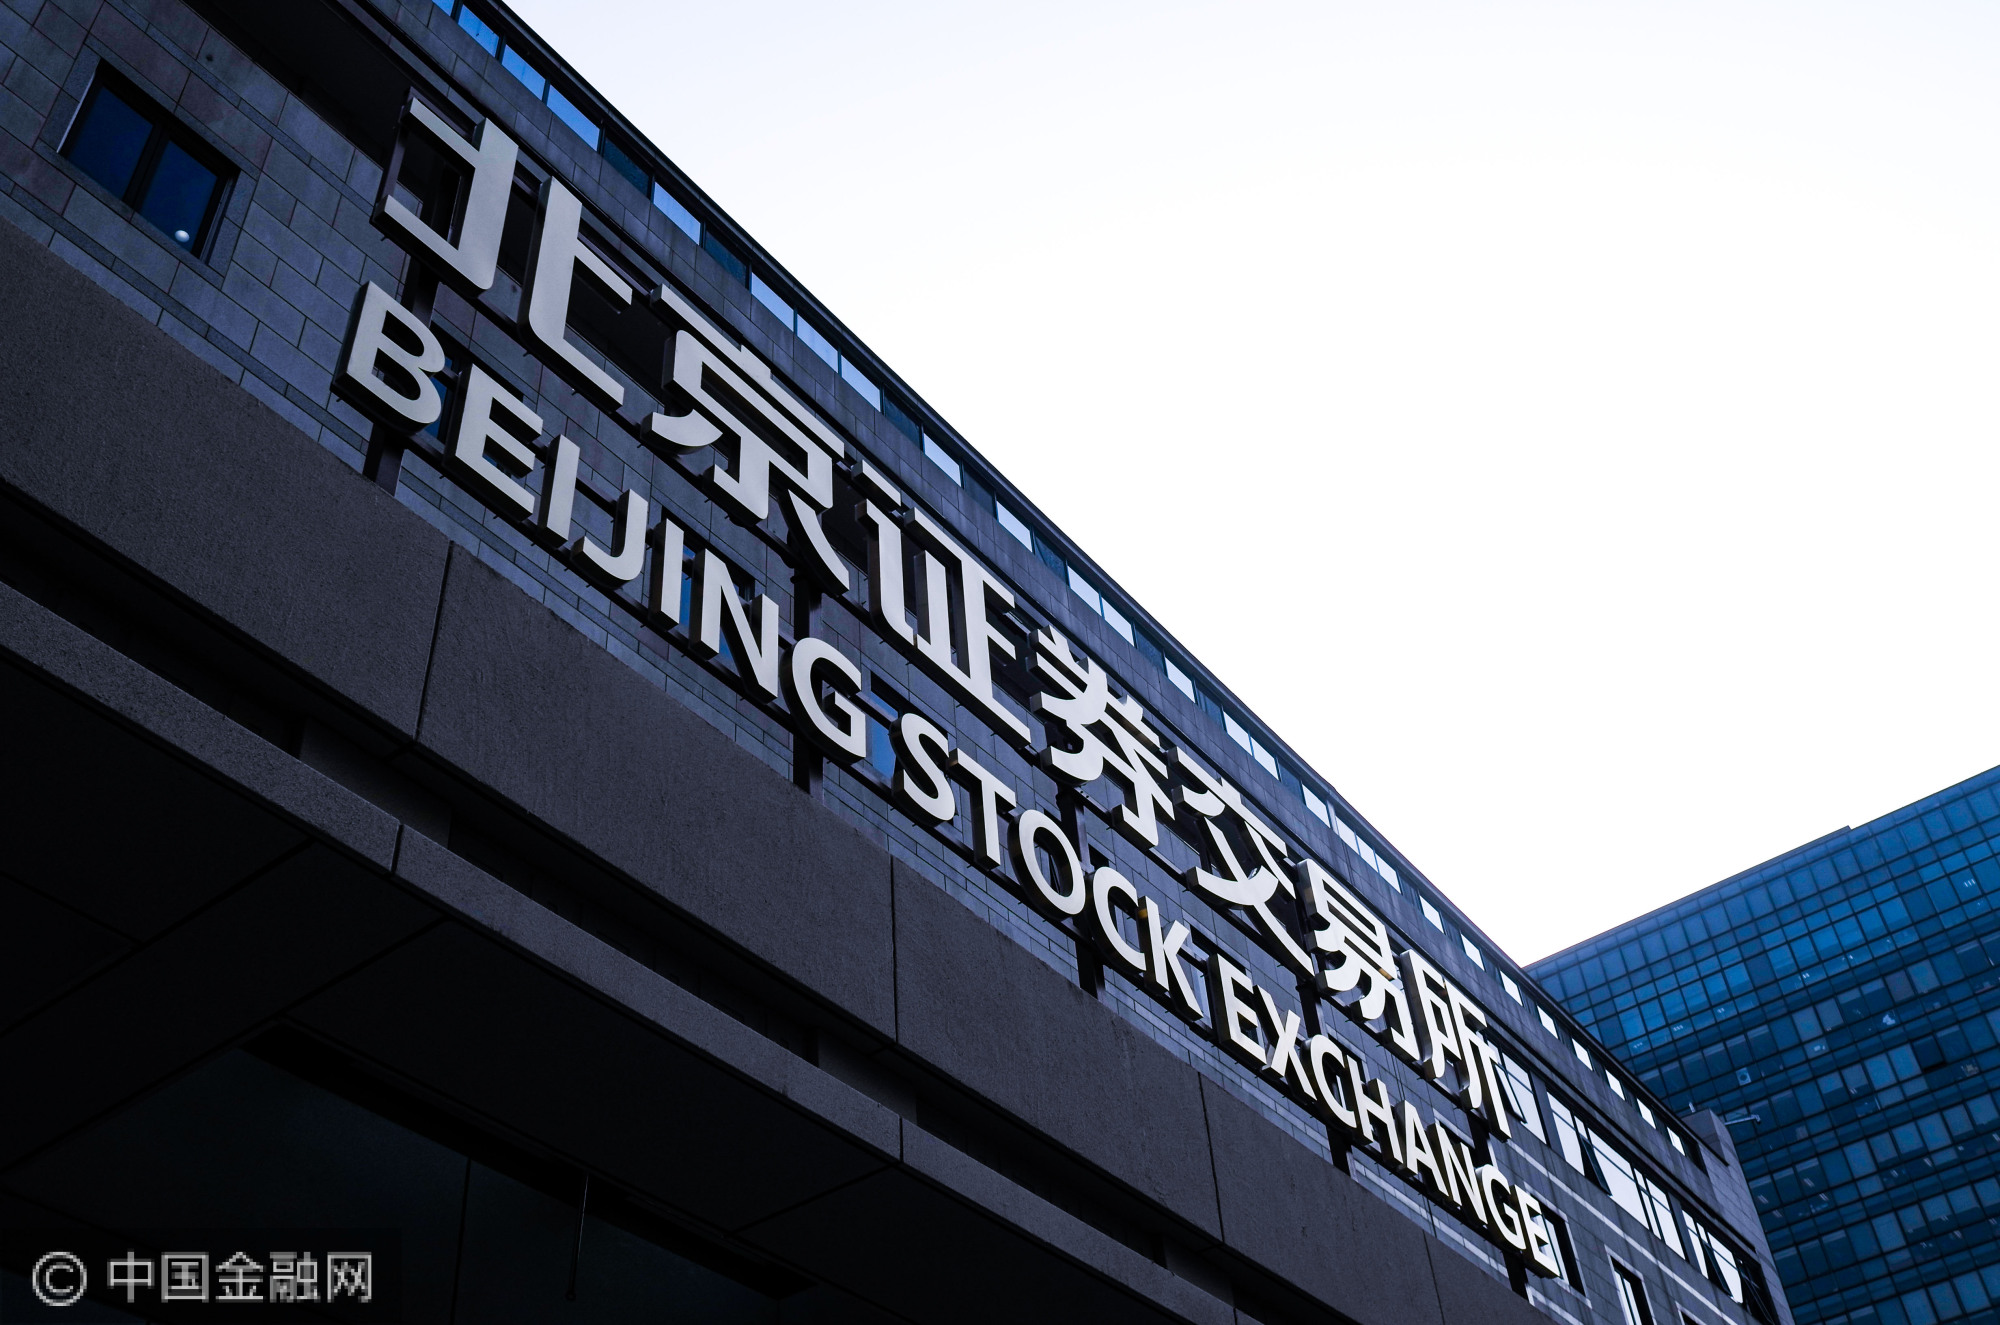 2021年11月15日-北京证券交易所-何世红摄影-1.jpg.jpg